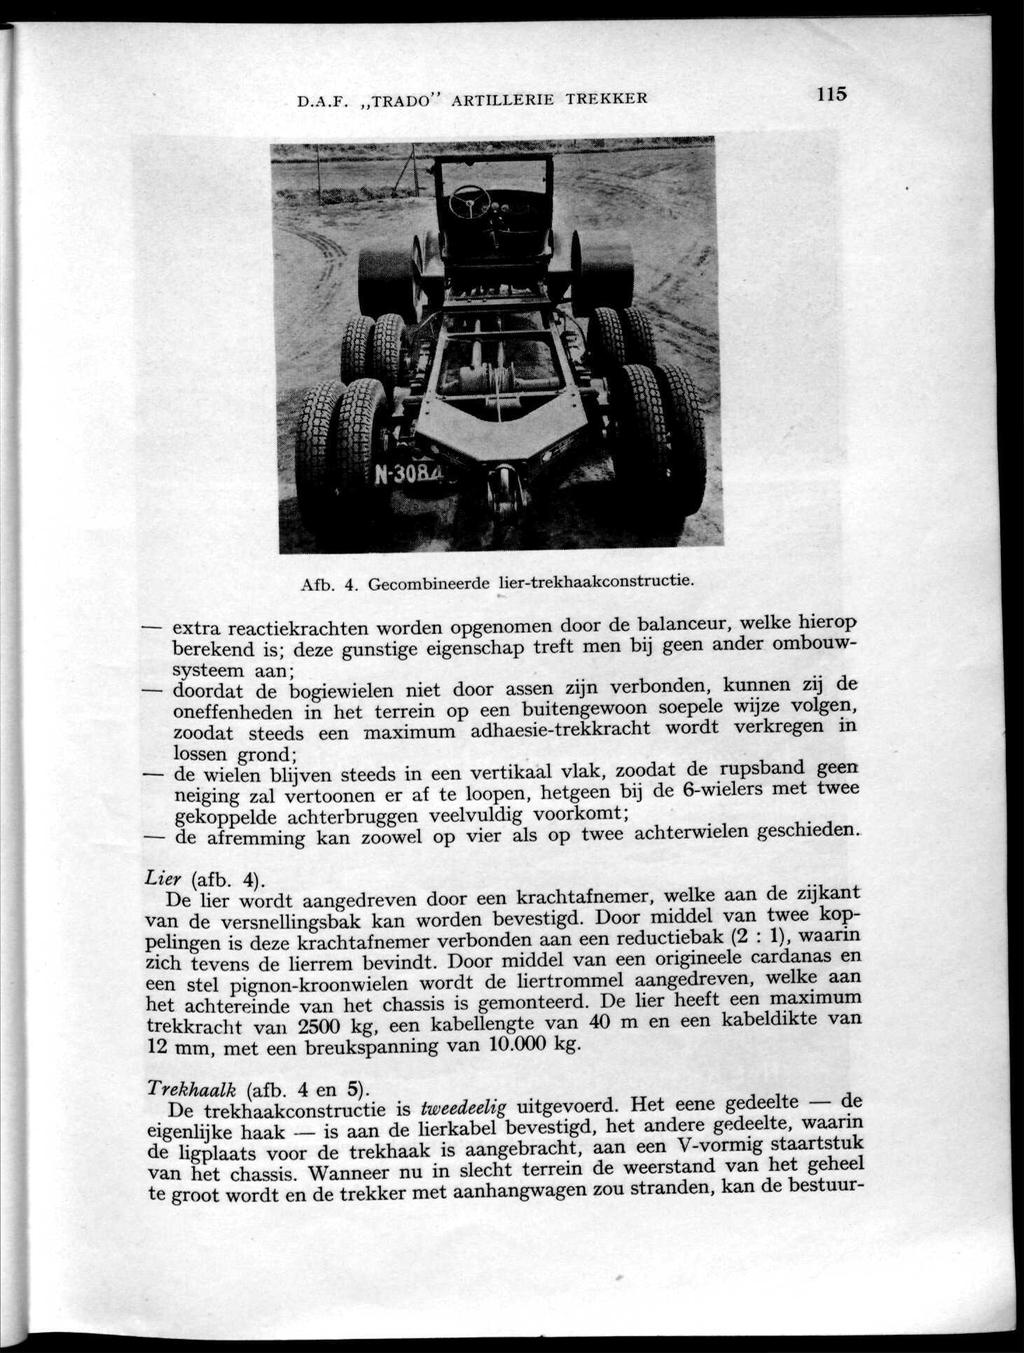 D.A.F. TRADO" ARTILLERIE TREKKER 115 Afb. 4. Gecombineerde lier-trekhaakconstructie.